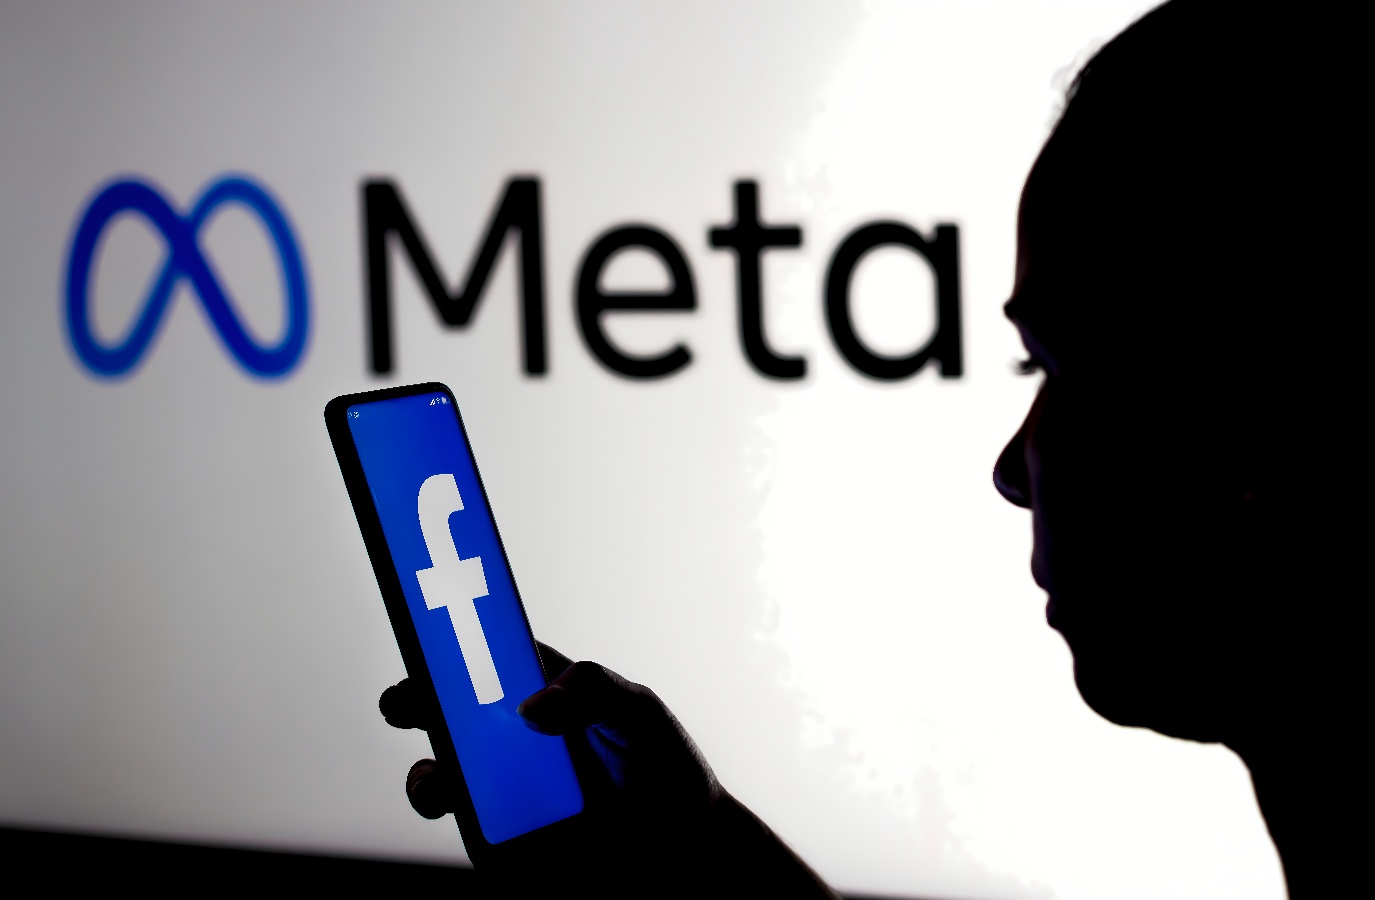 图片展示了一位人物剪影，手持展示Facebook标志的手机，背景是发光的“Meta”字样。